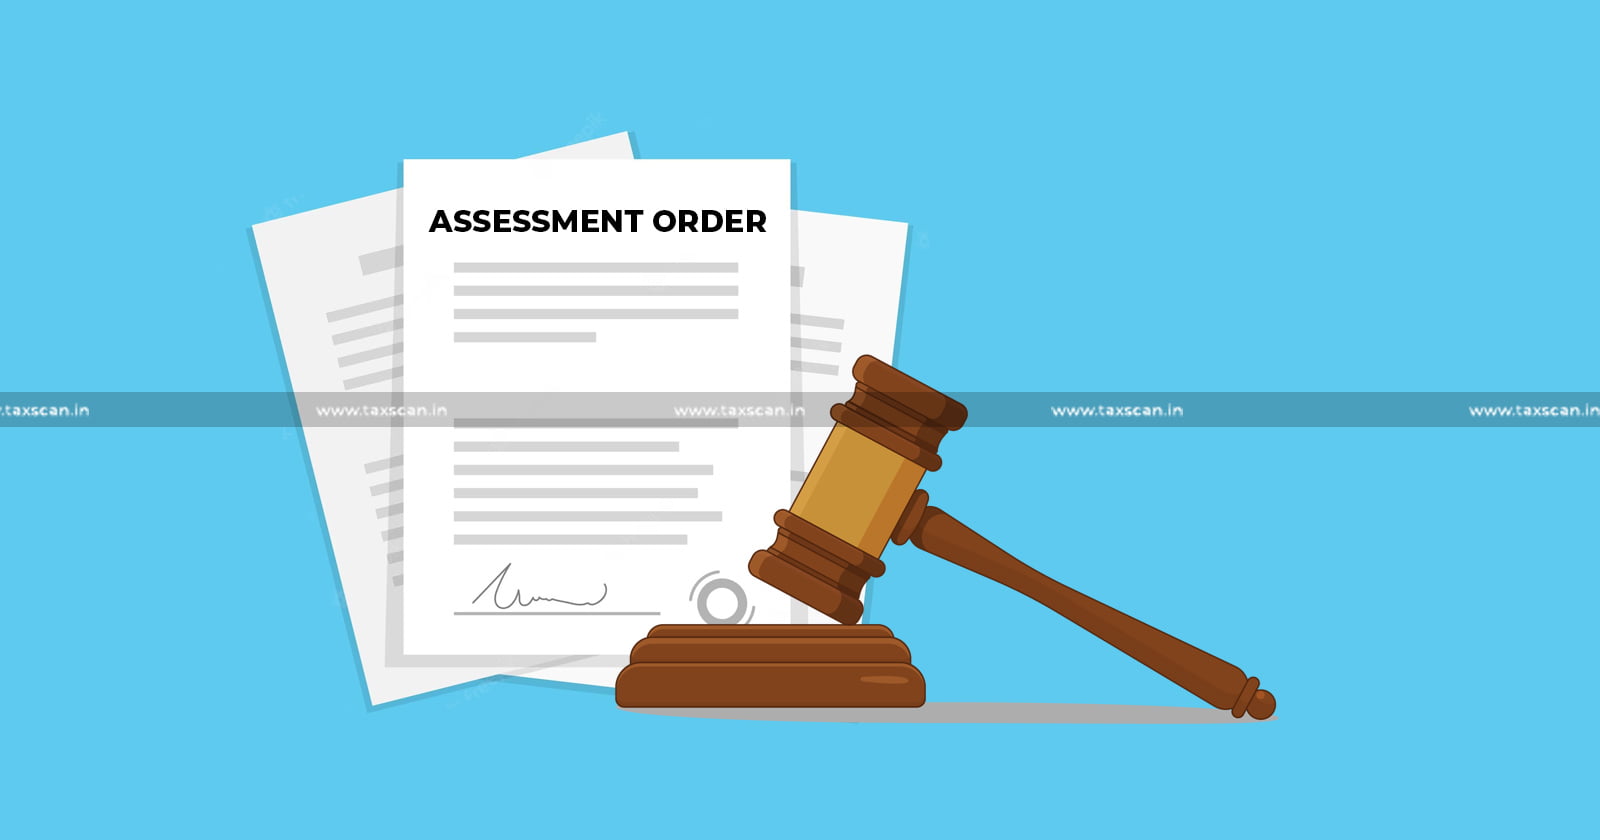 Kerala High Court - assessment order - Kerala High Court assessment order - taxscan